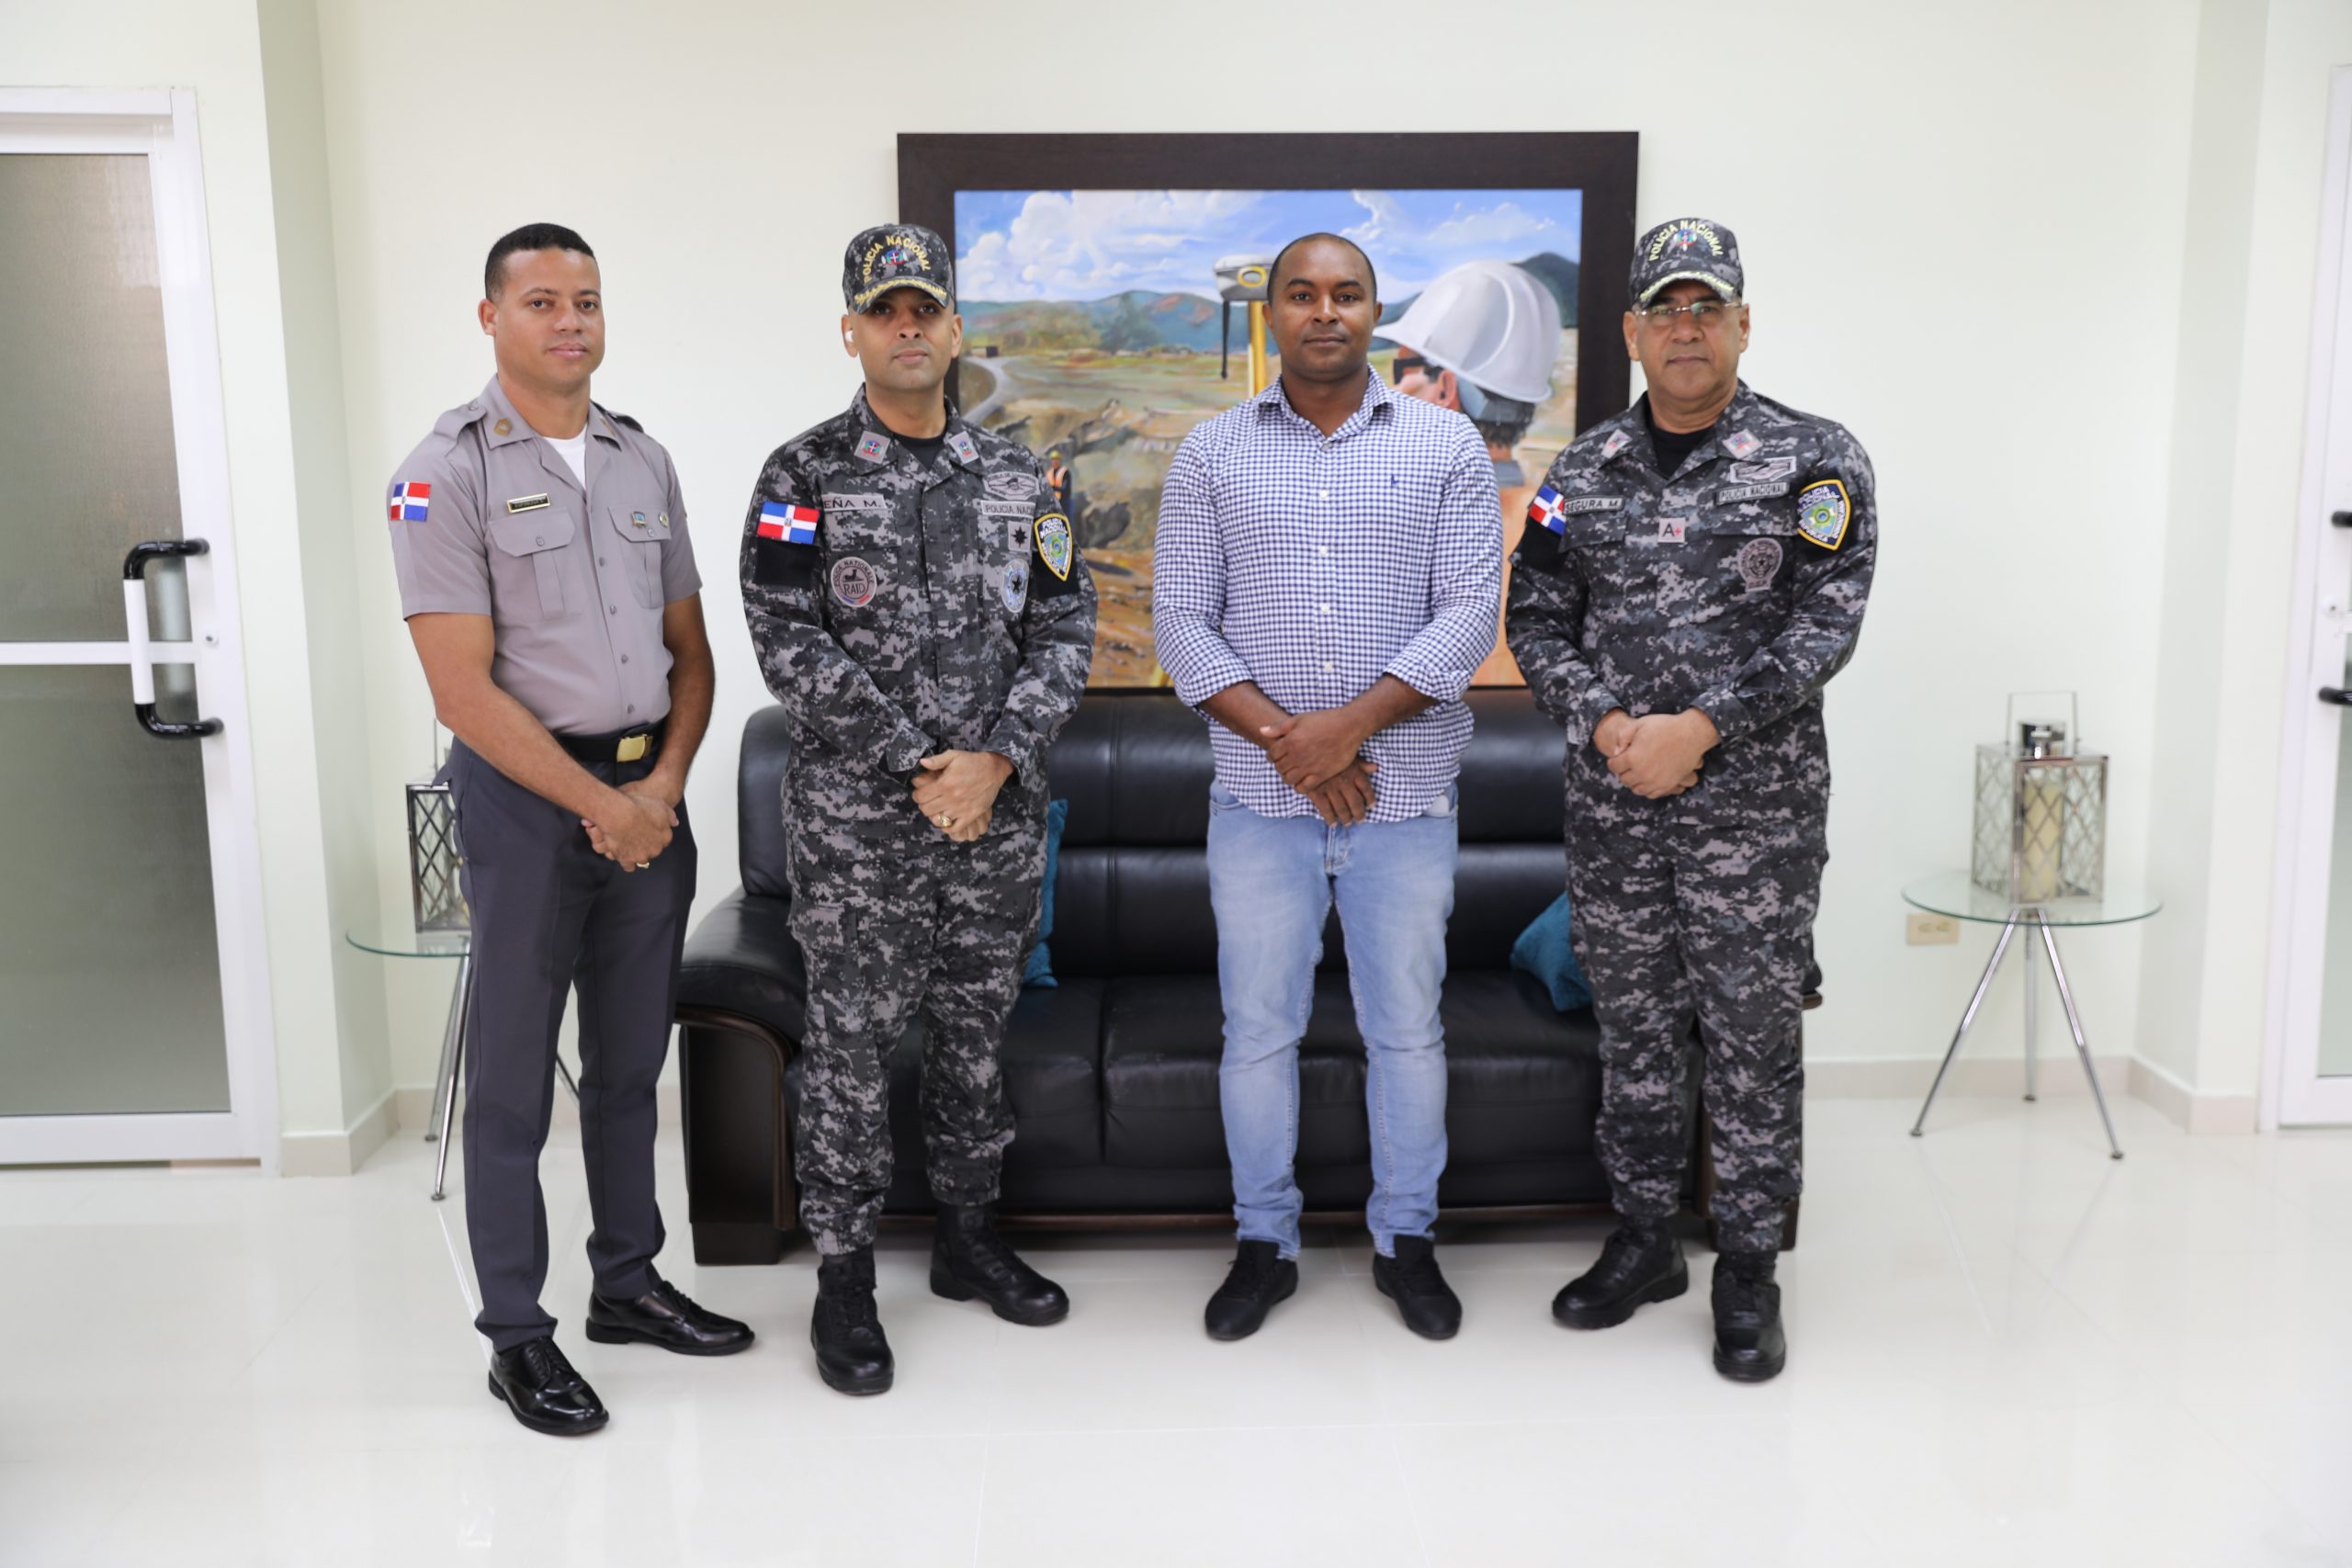 Representantes de la Policía Nacional visitan UASD Recinto San Juan